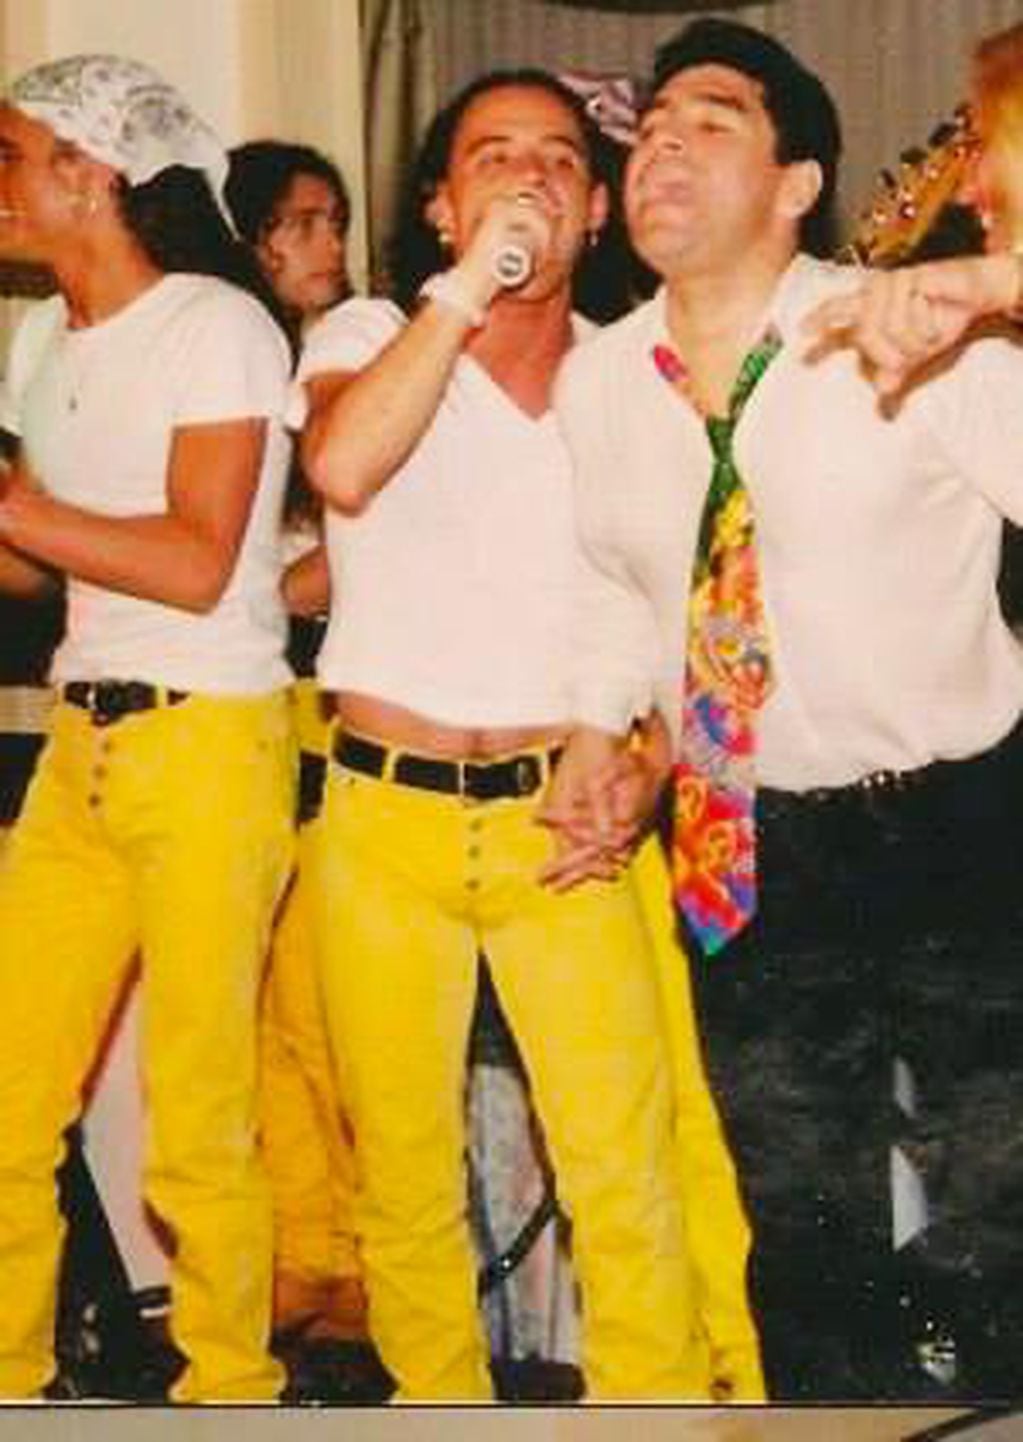 Show privado en 1997 para la familia de Maradona